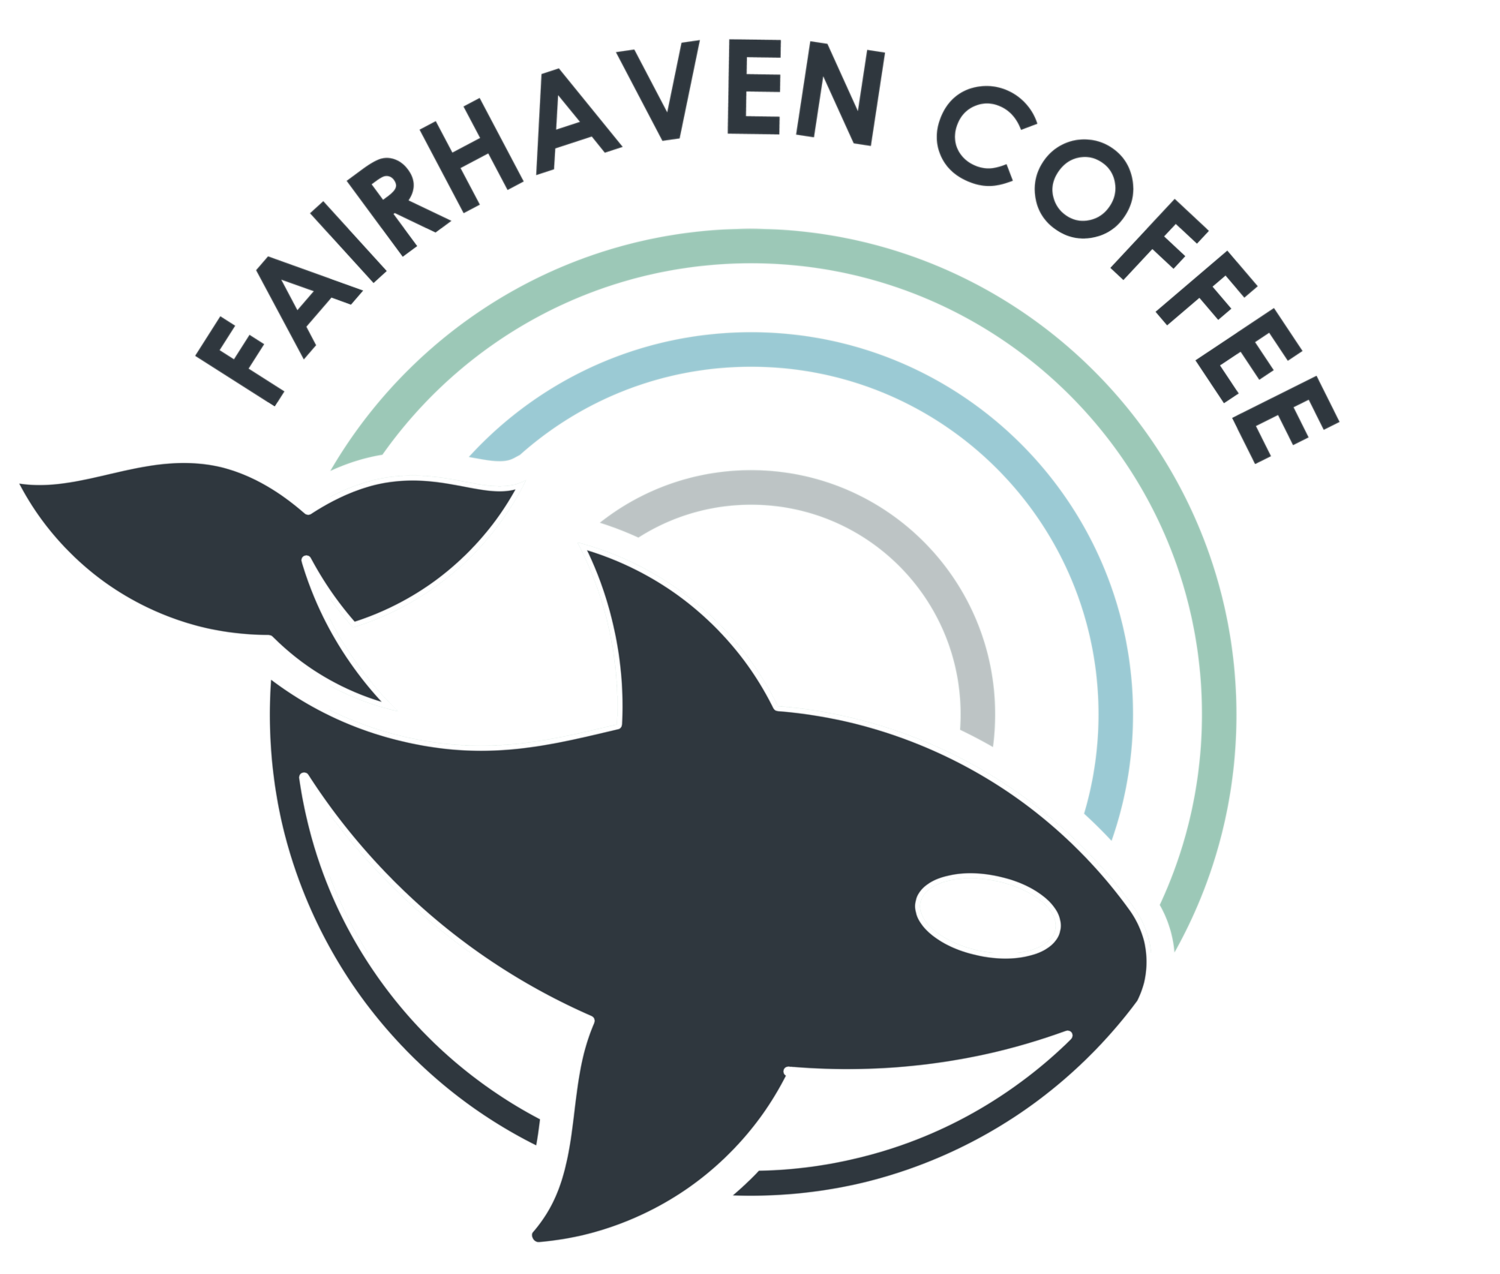 Fairhaven Coffee